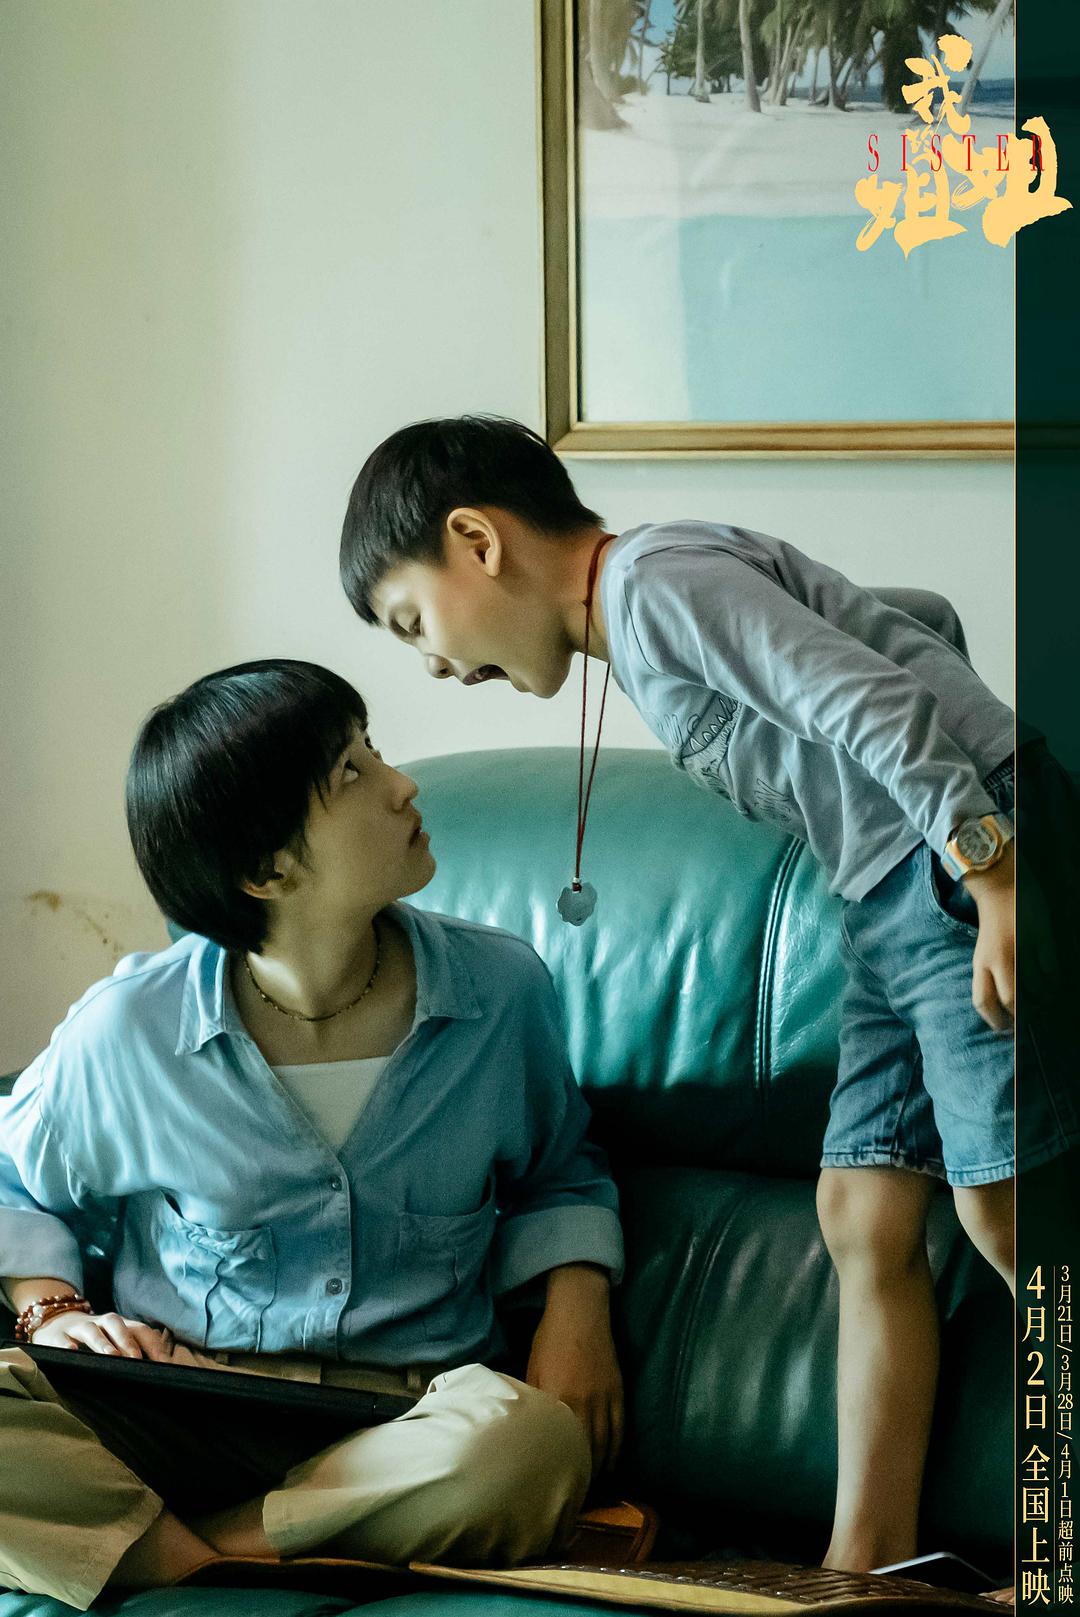 电影《我的姐姐》曝终极预告 揭开中国式家庭众生相